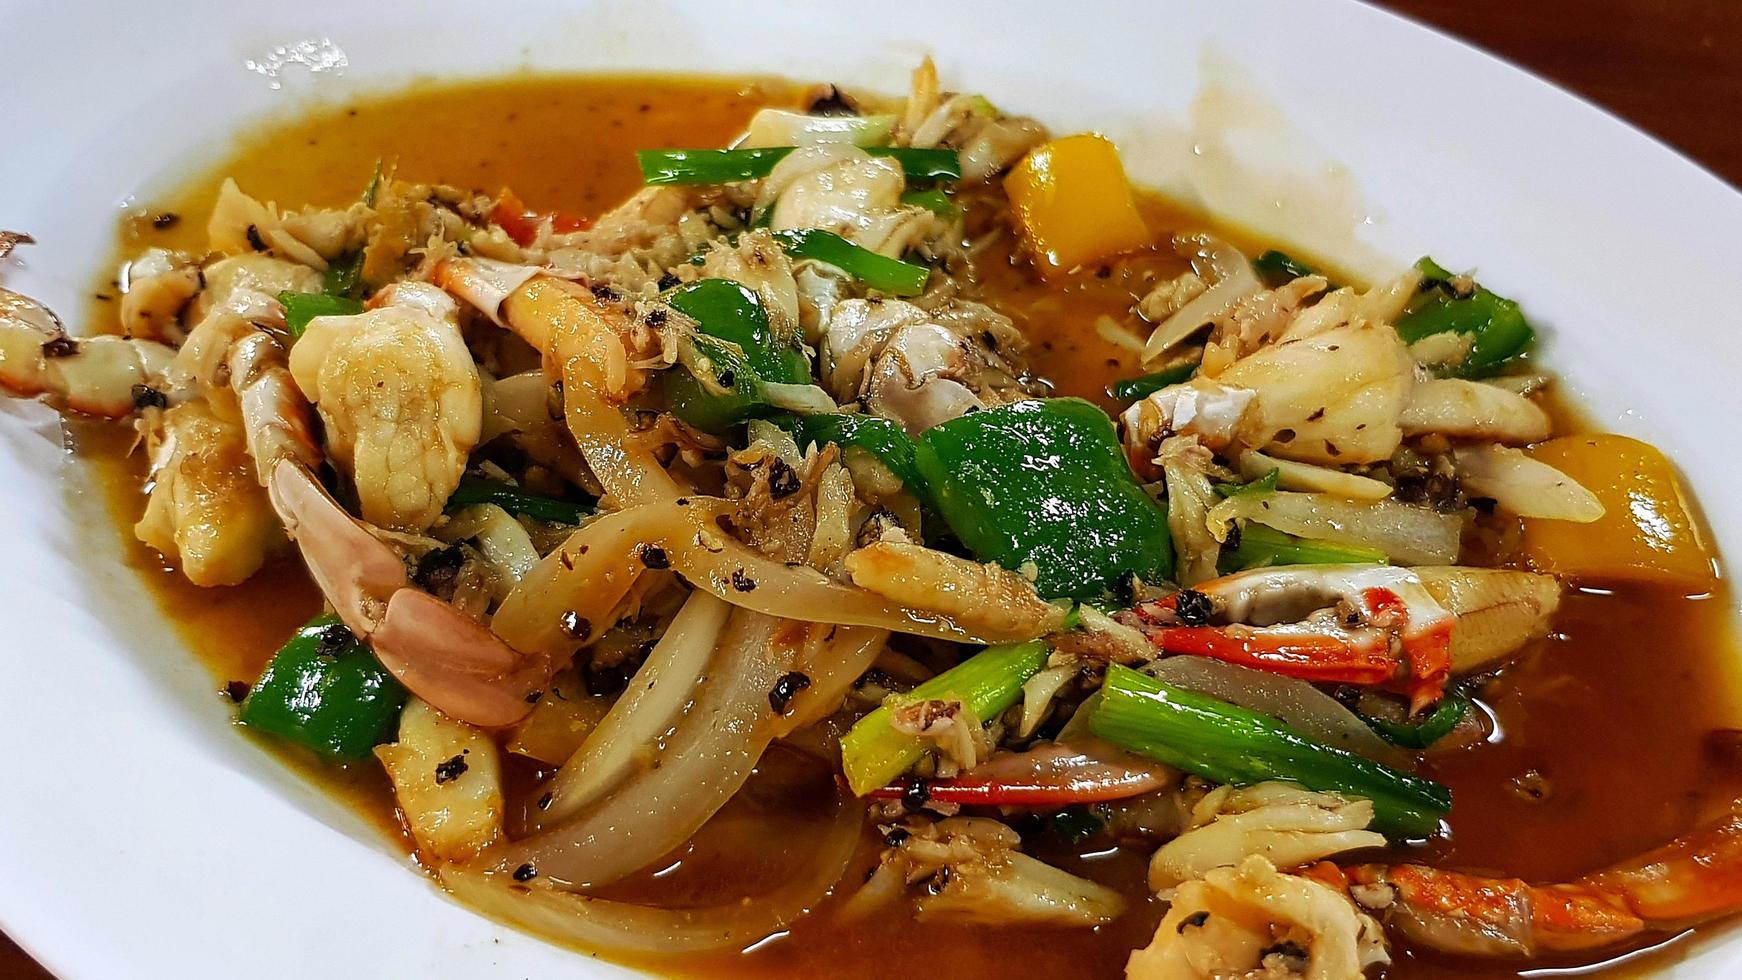 crabe sauté au poivre noir, oignon émincé, poivron et oignon de printemps sur une assiette blanche ou un plat au restaurant thaïlandais. cuisine asiatique et célèbre avec des fruits de mer en thaïlande. photo